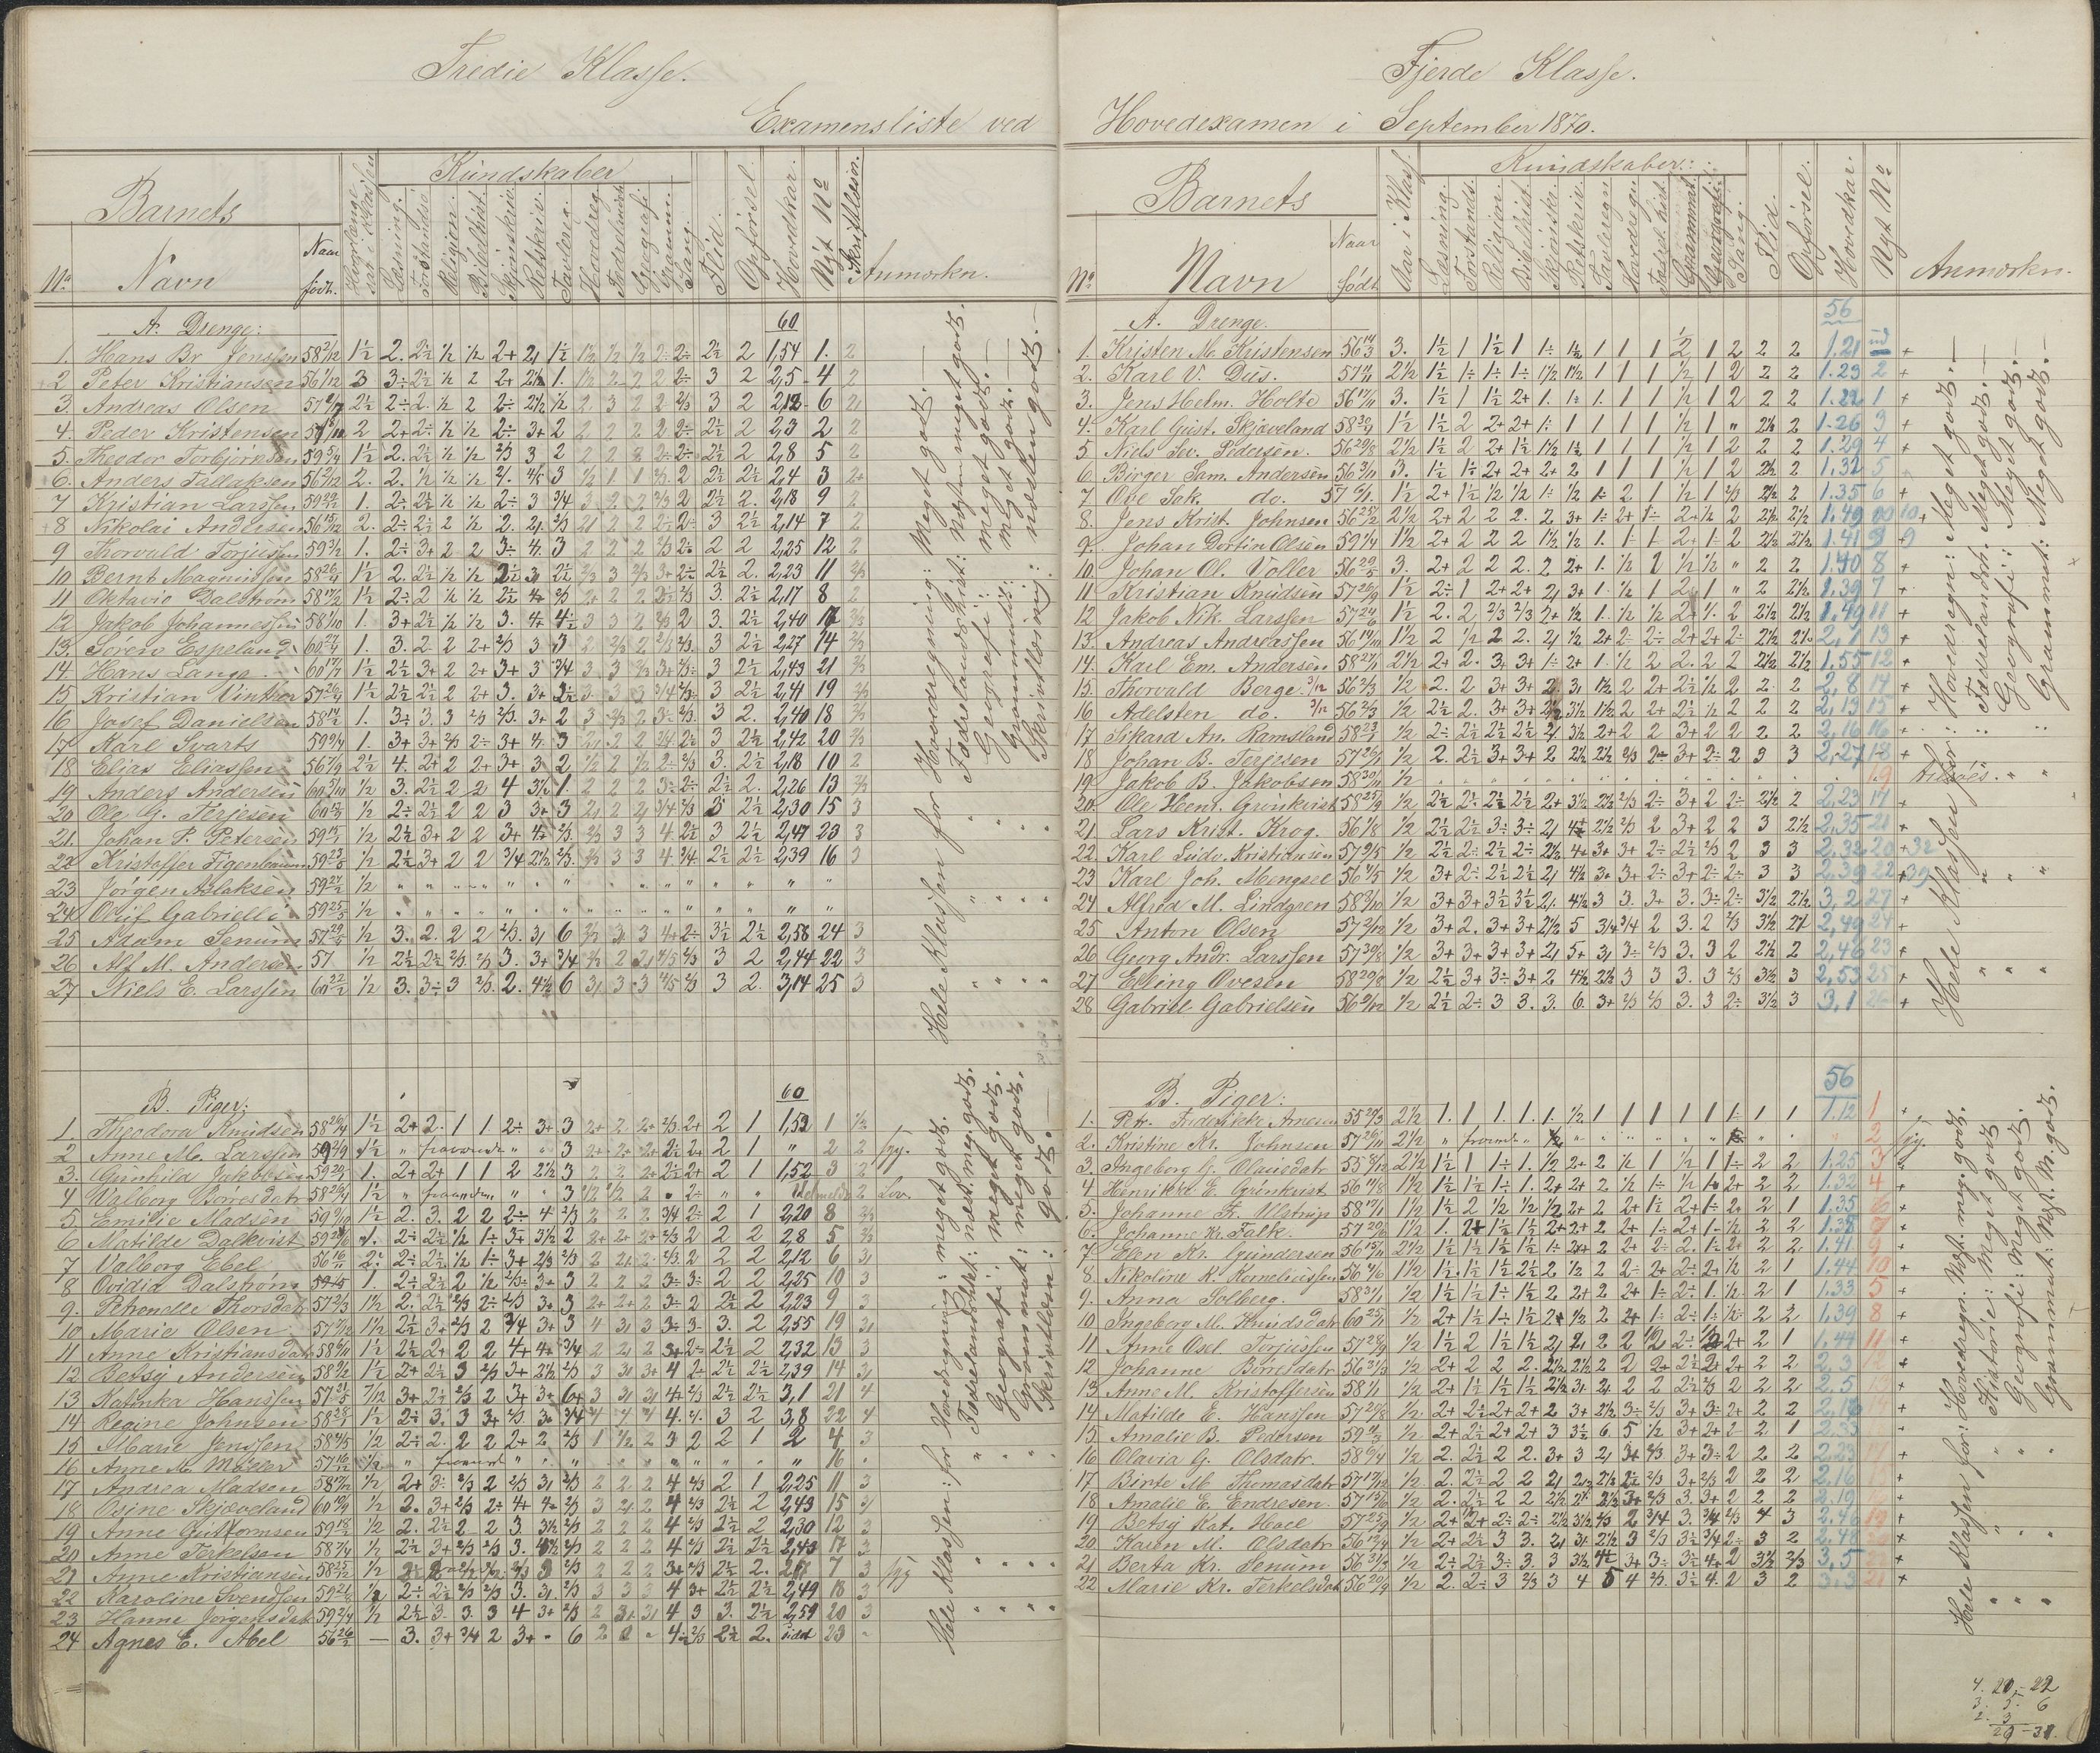 Arendal kommune, Katalog I, AAKS/KA0906-PK-I/07/L0087: Eksamenslister, 1863-1870